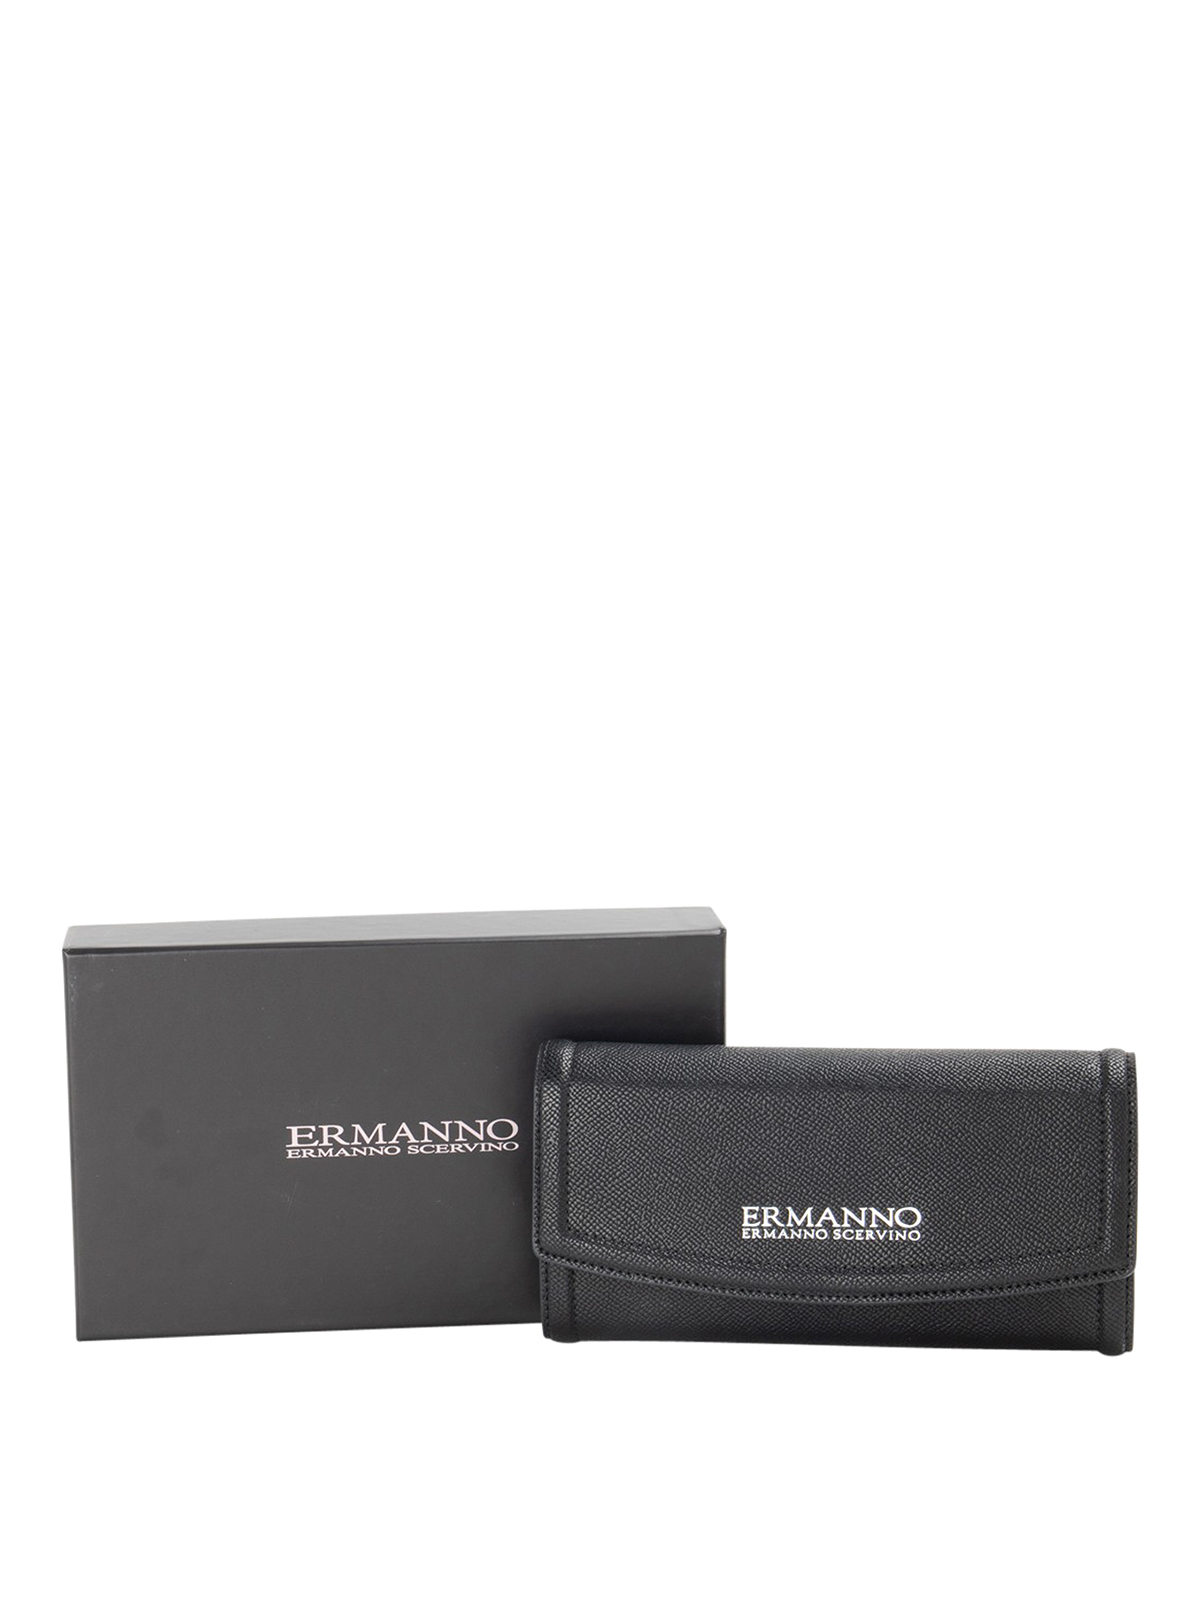 Ermanno By Ermanno Scervino Wallet In Black